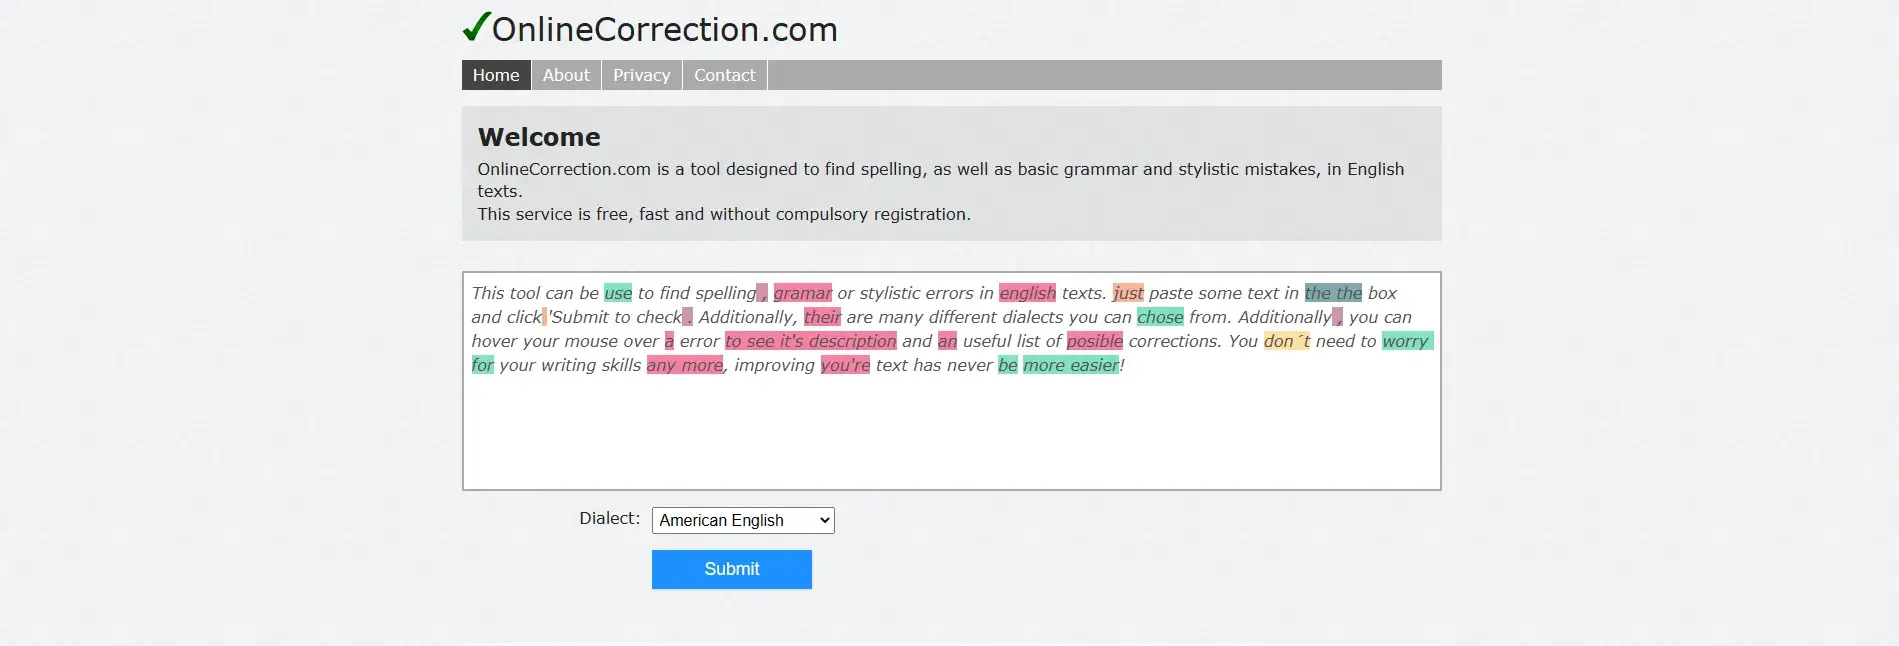 Grammarly Alternatives: Online Correction